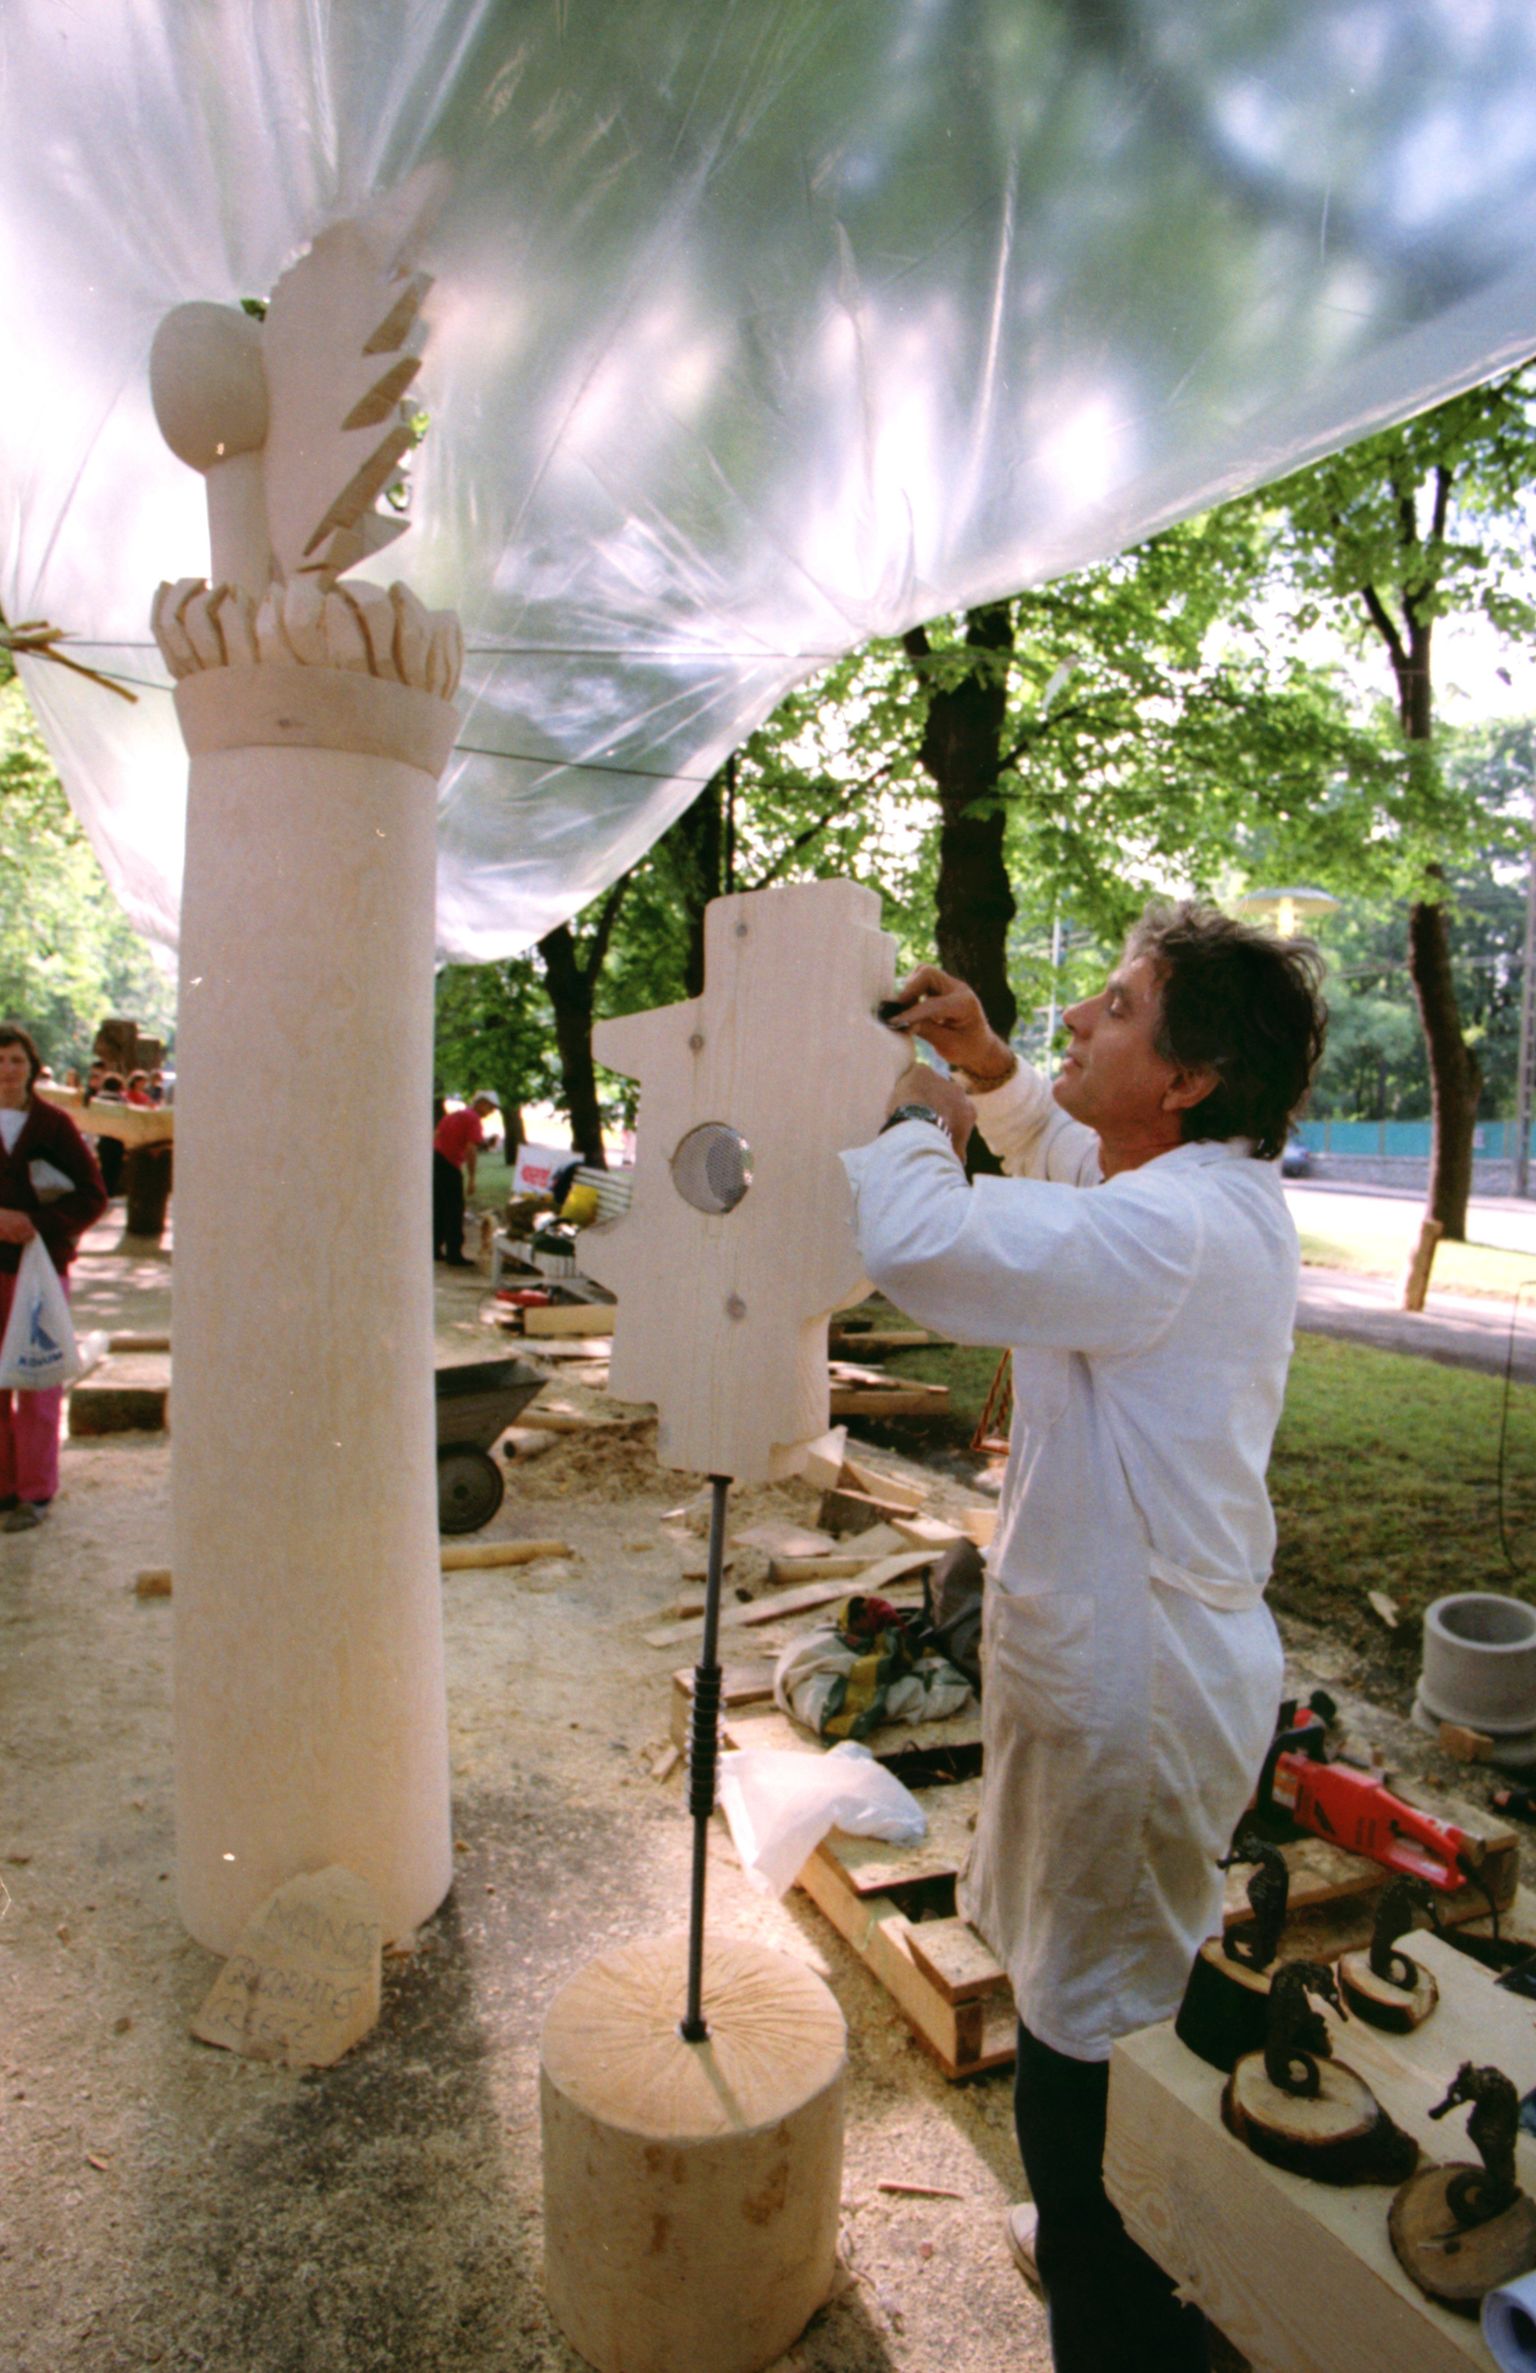 Rahvusvaheline puuskulptuuri sümpoosion „Puu ´95“ 6. – 13. august 1995 Tallinnas